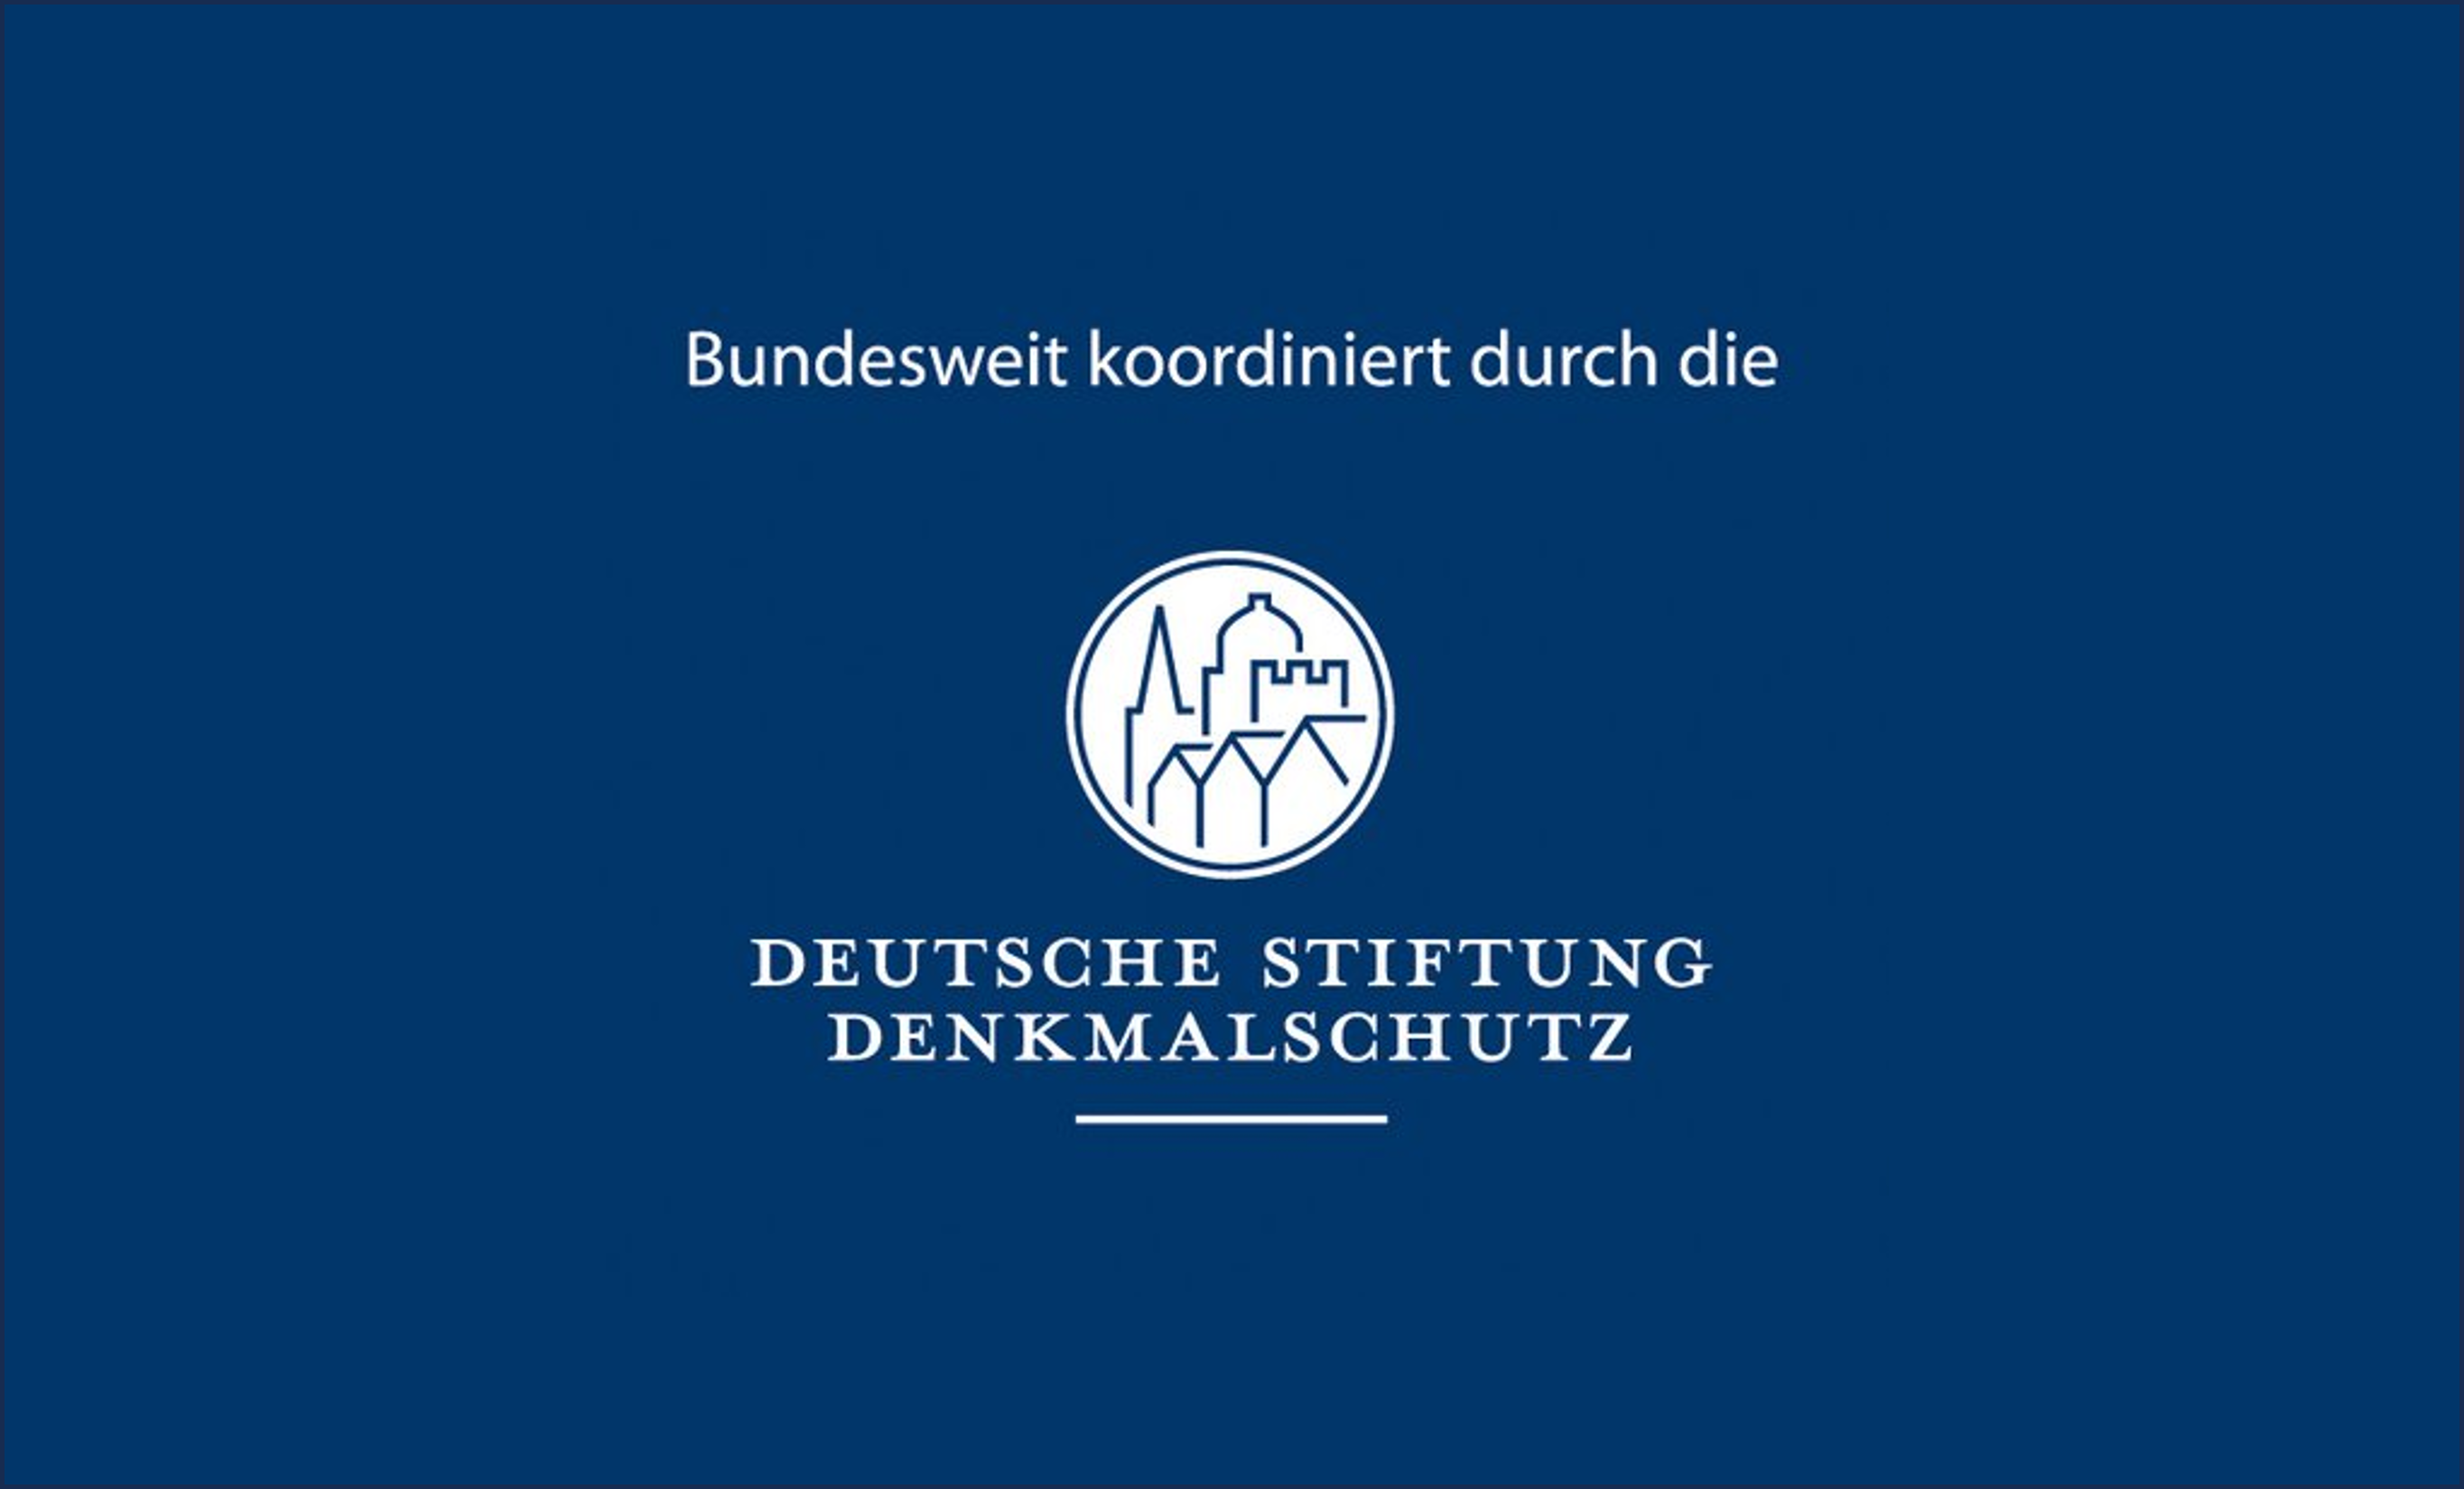 Weiße Schrift auf blaume Grund: Deutsche Stiftung Denkmalschutz